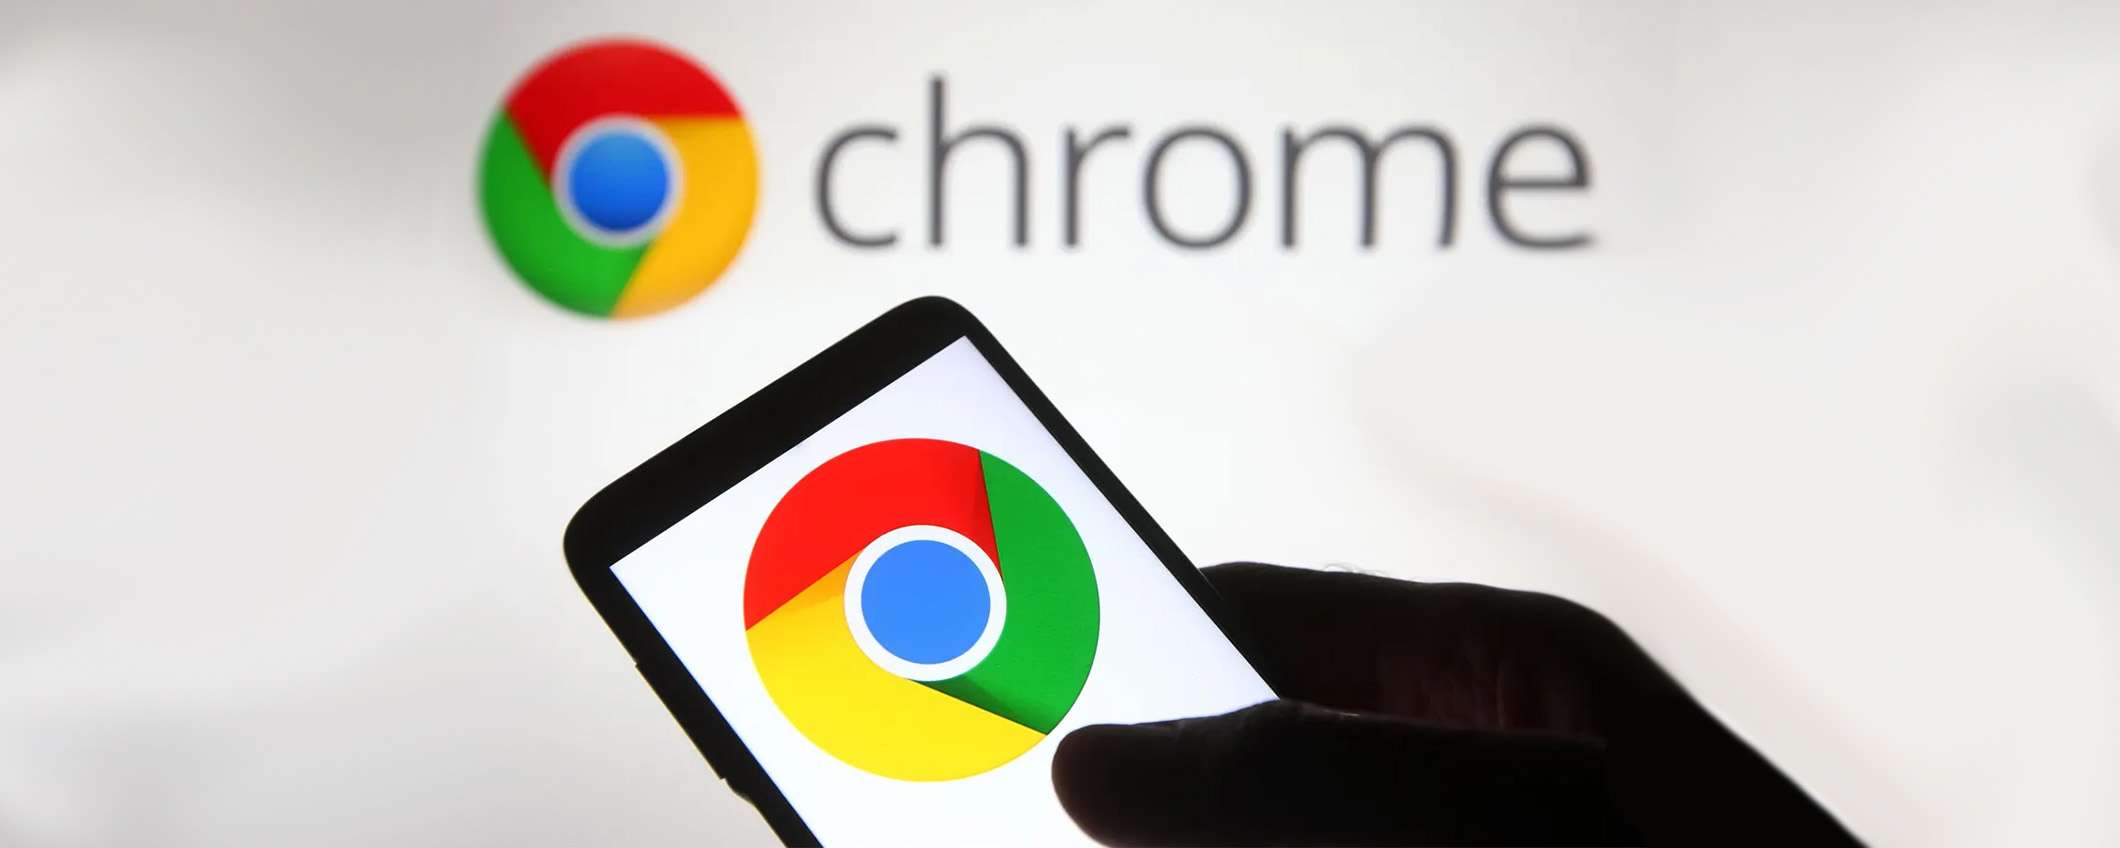 Come abilitare e condividere gli appunti di Chrome tra diversi dispositivi